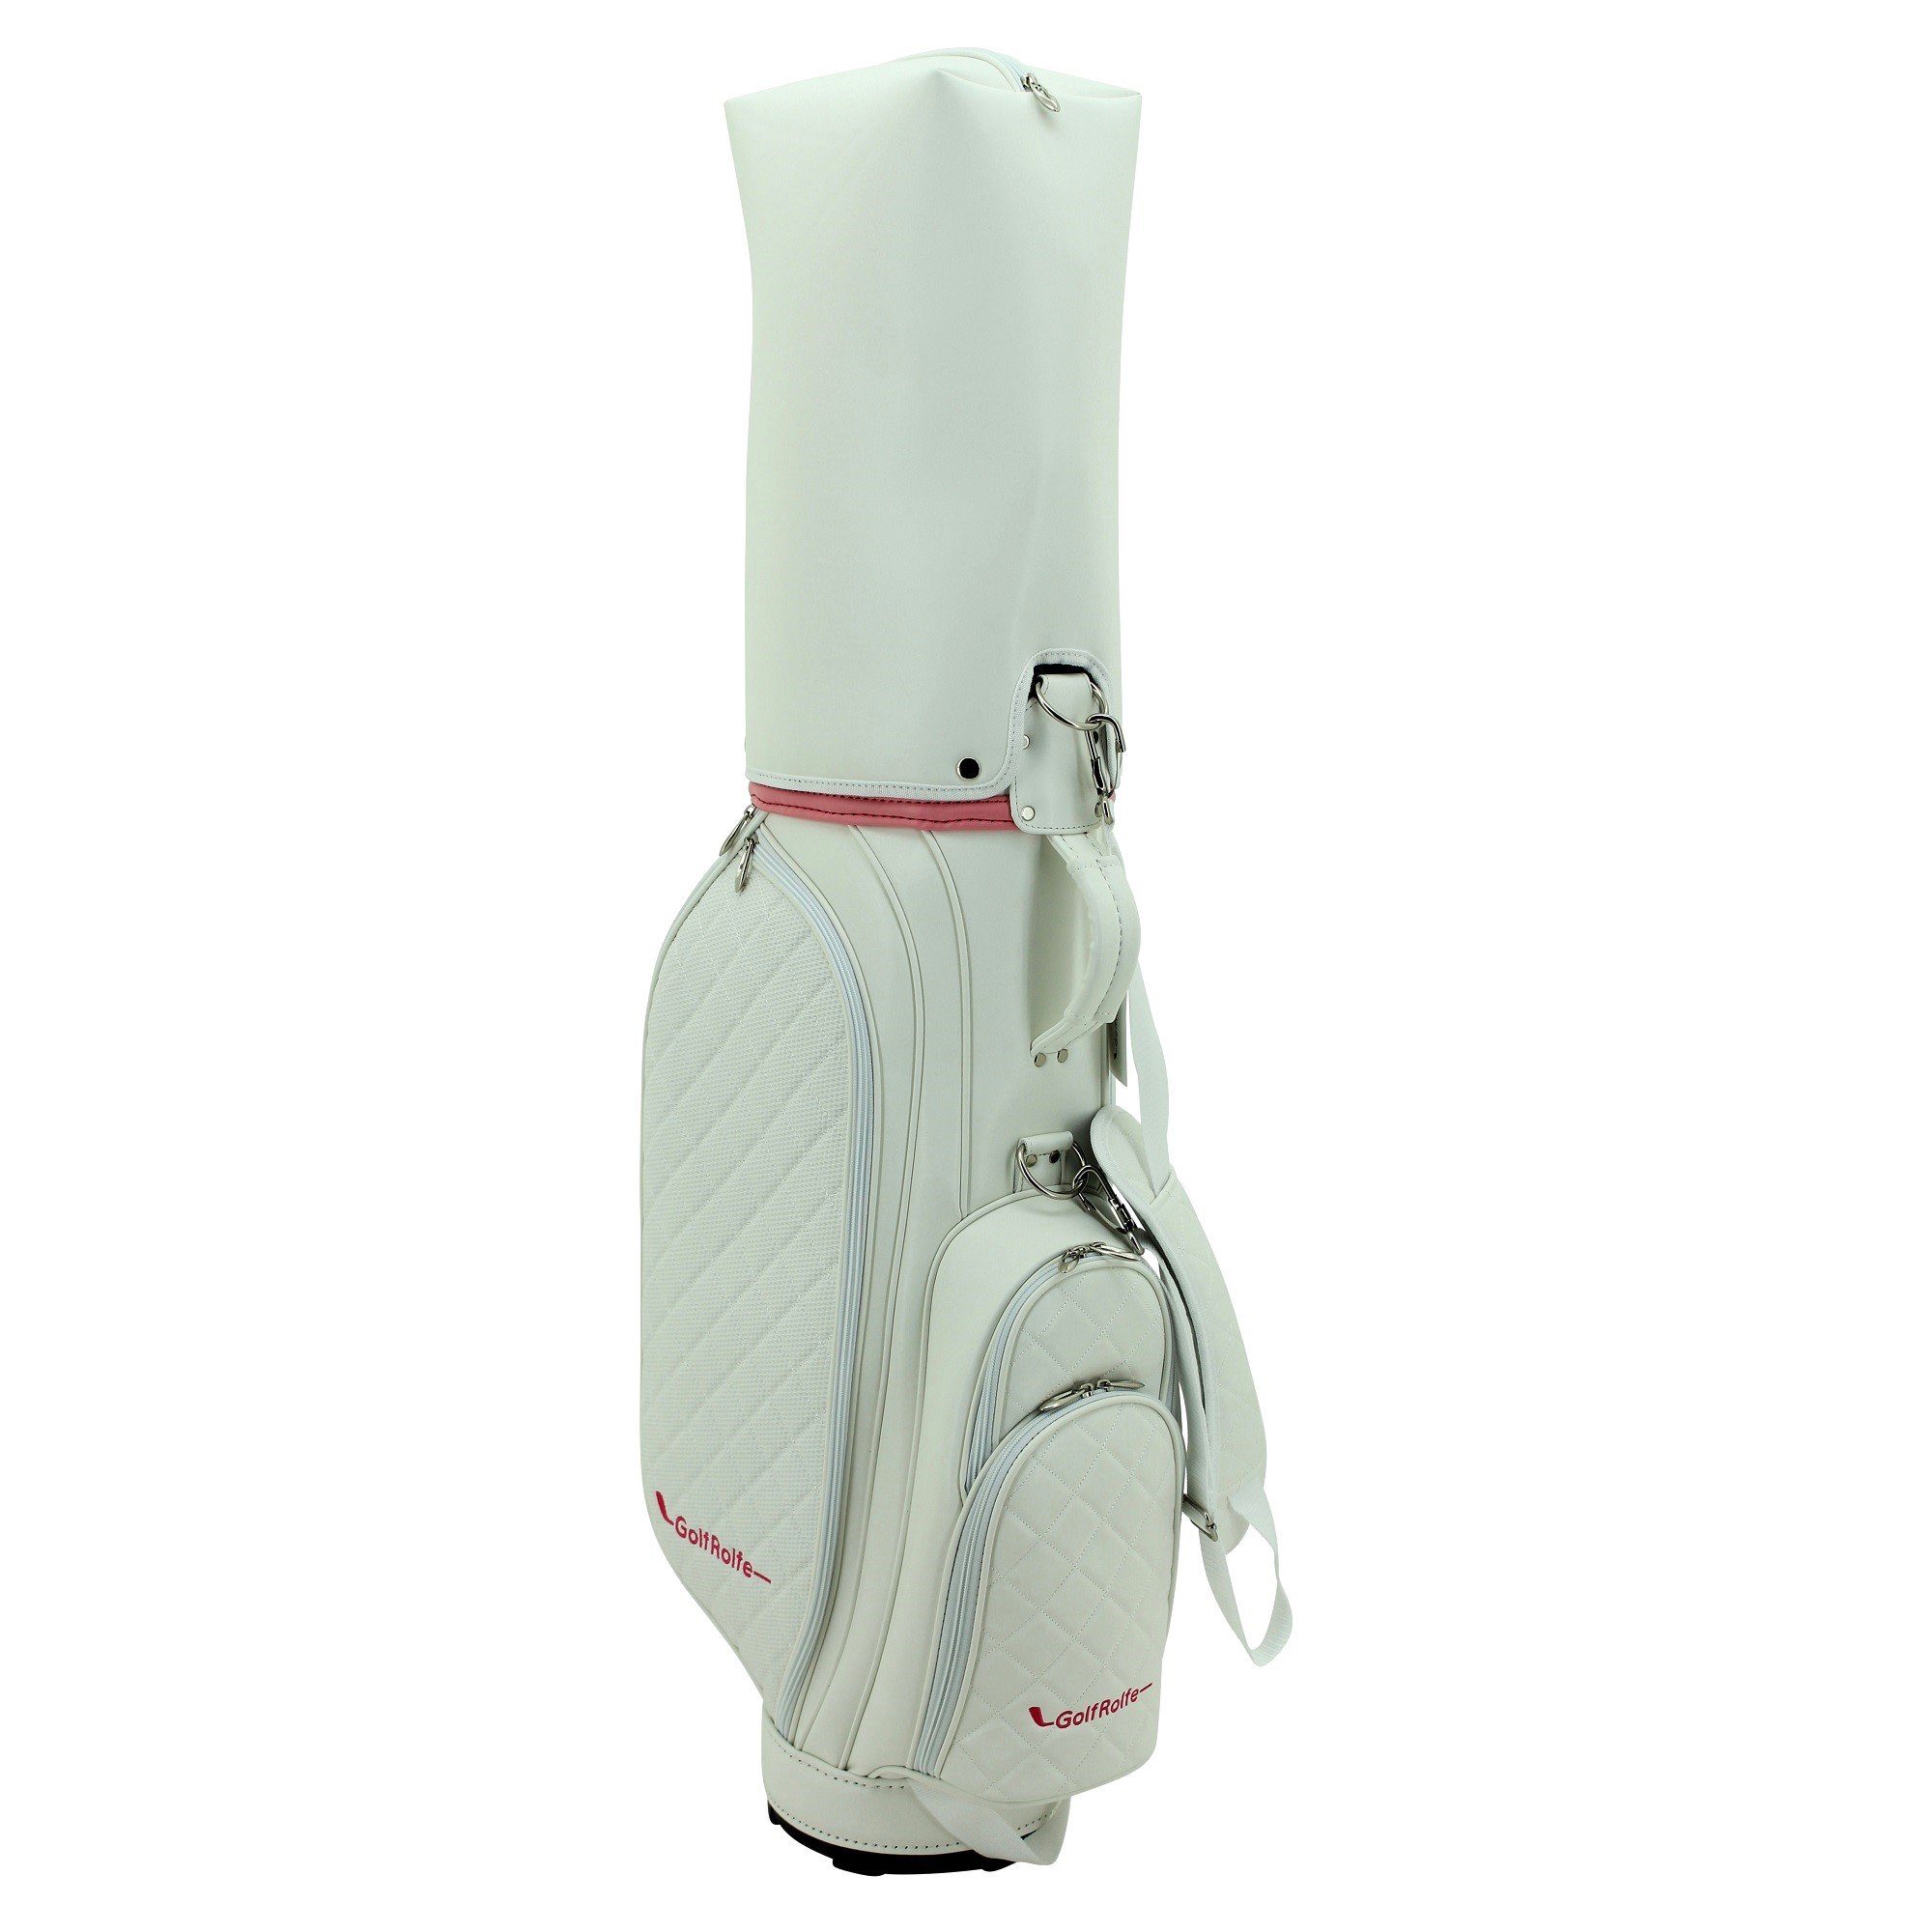 GolfRolfe Golfballtasche GolfRolfe - Golfbag Caddybag 14279 Design weiß Golftasche